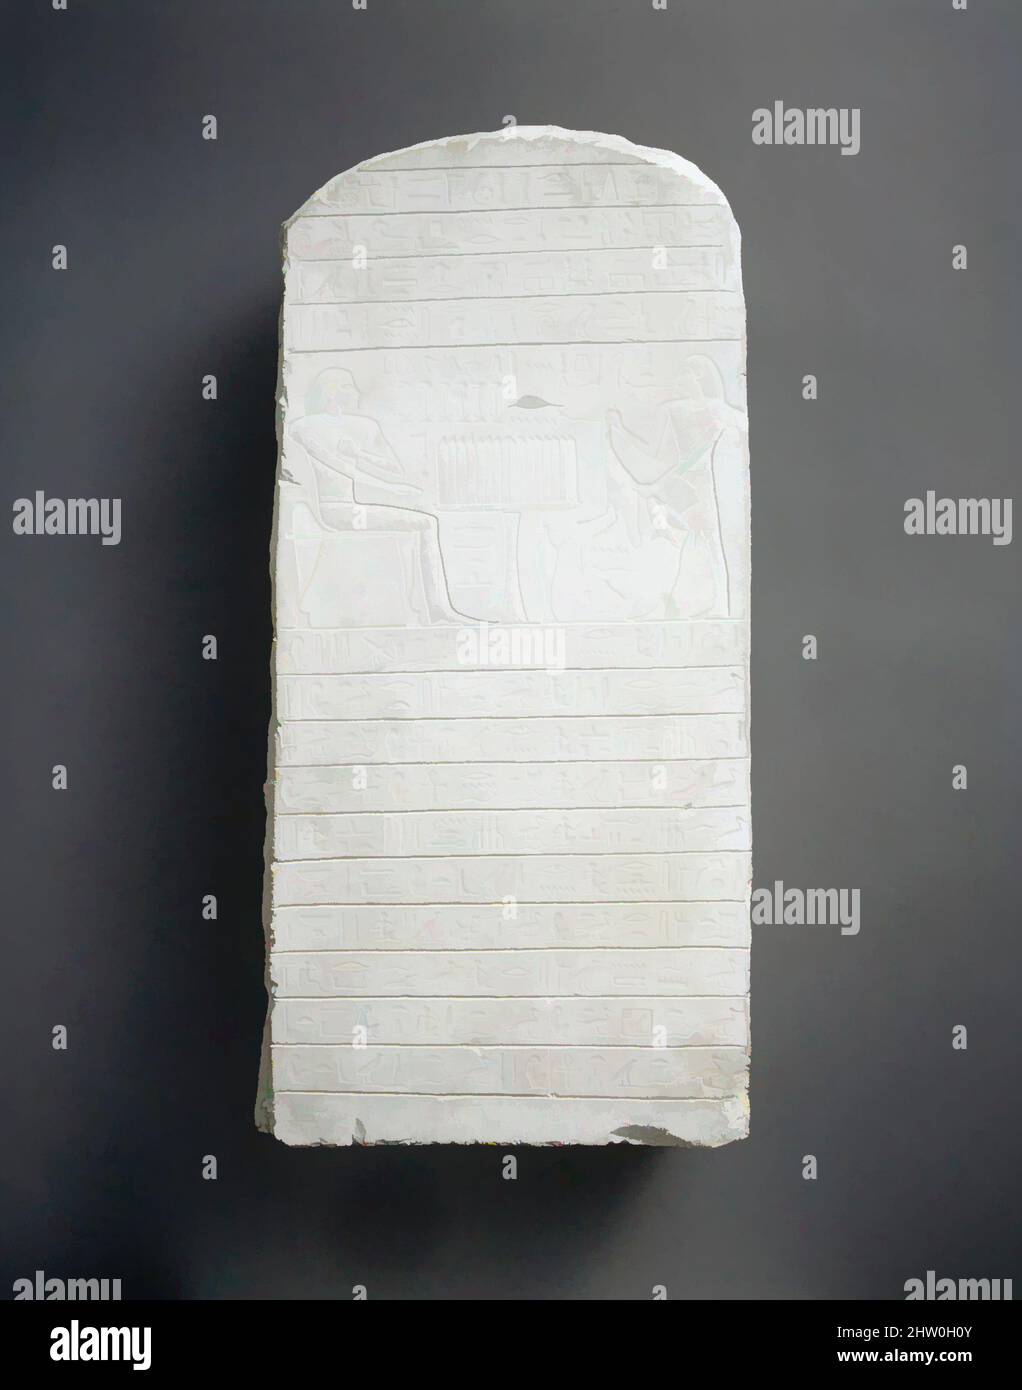 Stela von Rehuerdjersen, Reich der Mitte, Dynastie 12, Mitte, ca. 1900–1850 v. Chr., aus Ägypten, Abydos; wahrscheinlich aus Nord-Oberägypten, Abydos, Kalkstein, H. 46,1 cm (18 1/8 in.); W. 23,2 cm (9 1/8 in.); D. 10,6 cm (4 1/16 in.), Rehuerdjersen war Schatzmeister unter Amenemhat I und Senwosret I, den ersten beiden Königen der Dynastie 12. Diese Stele stammt aus dem Kenotaph eines Rehuerdjersen in Abydos, und der Stil stammt aus der Regierungszeit von Amenemhat II, etwa vierzig Jahre nach dem Tod des Schatzmeisters Stockfoto